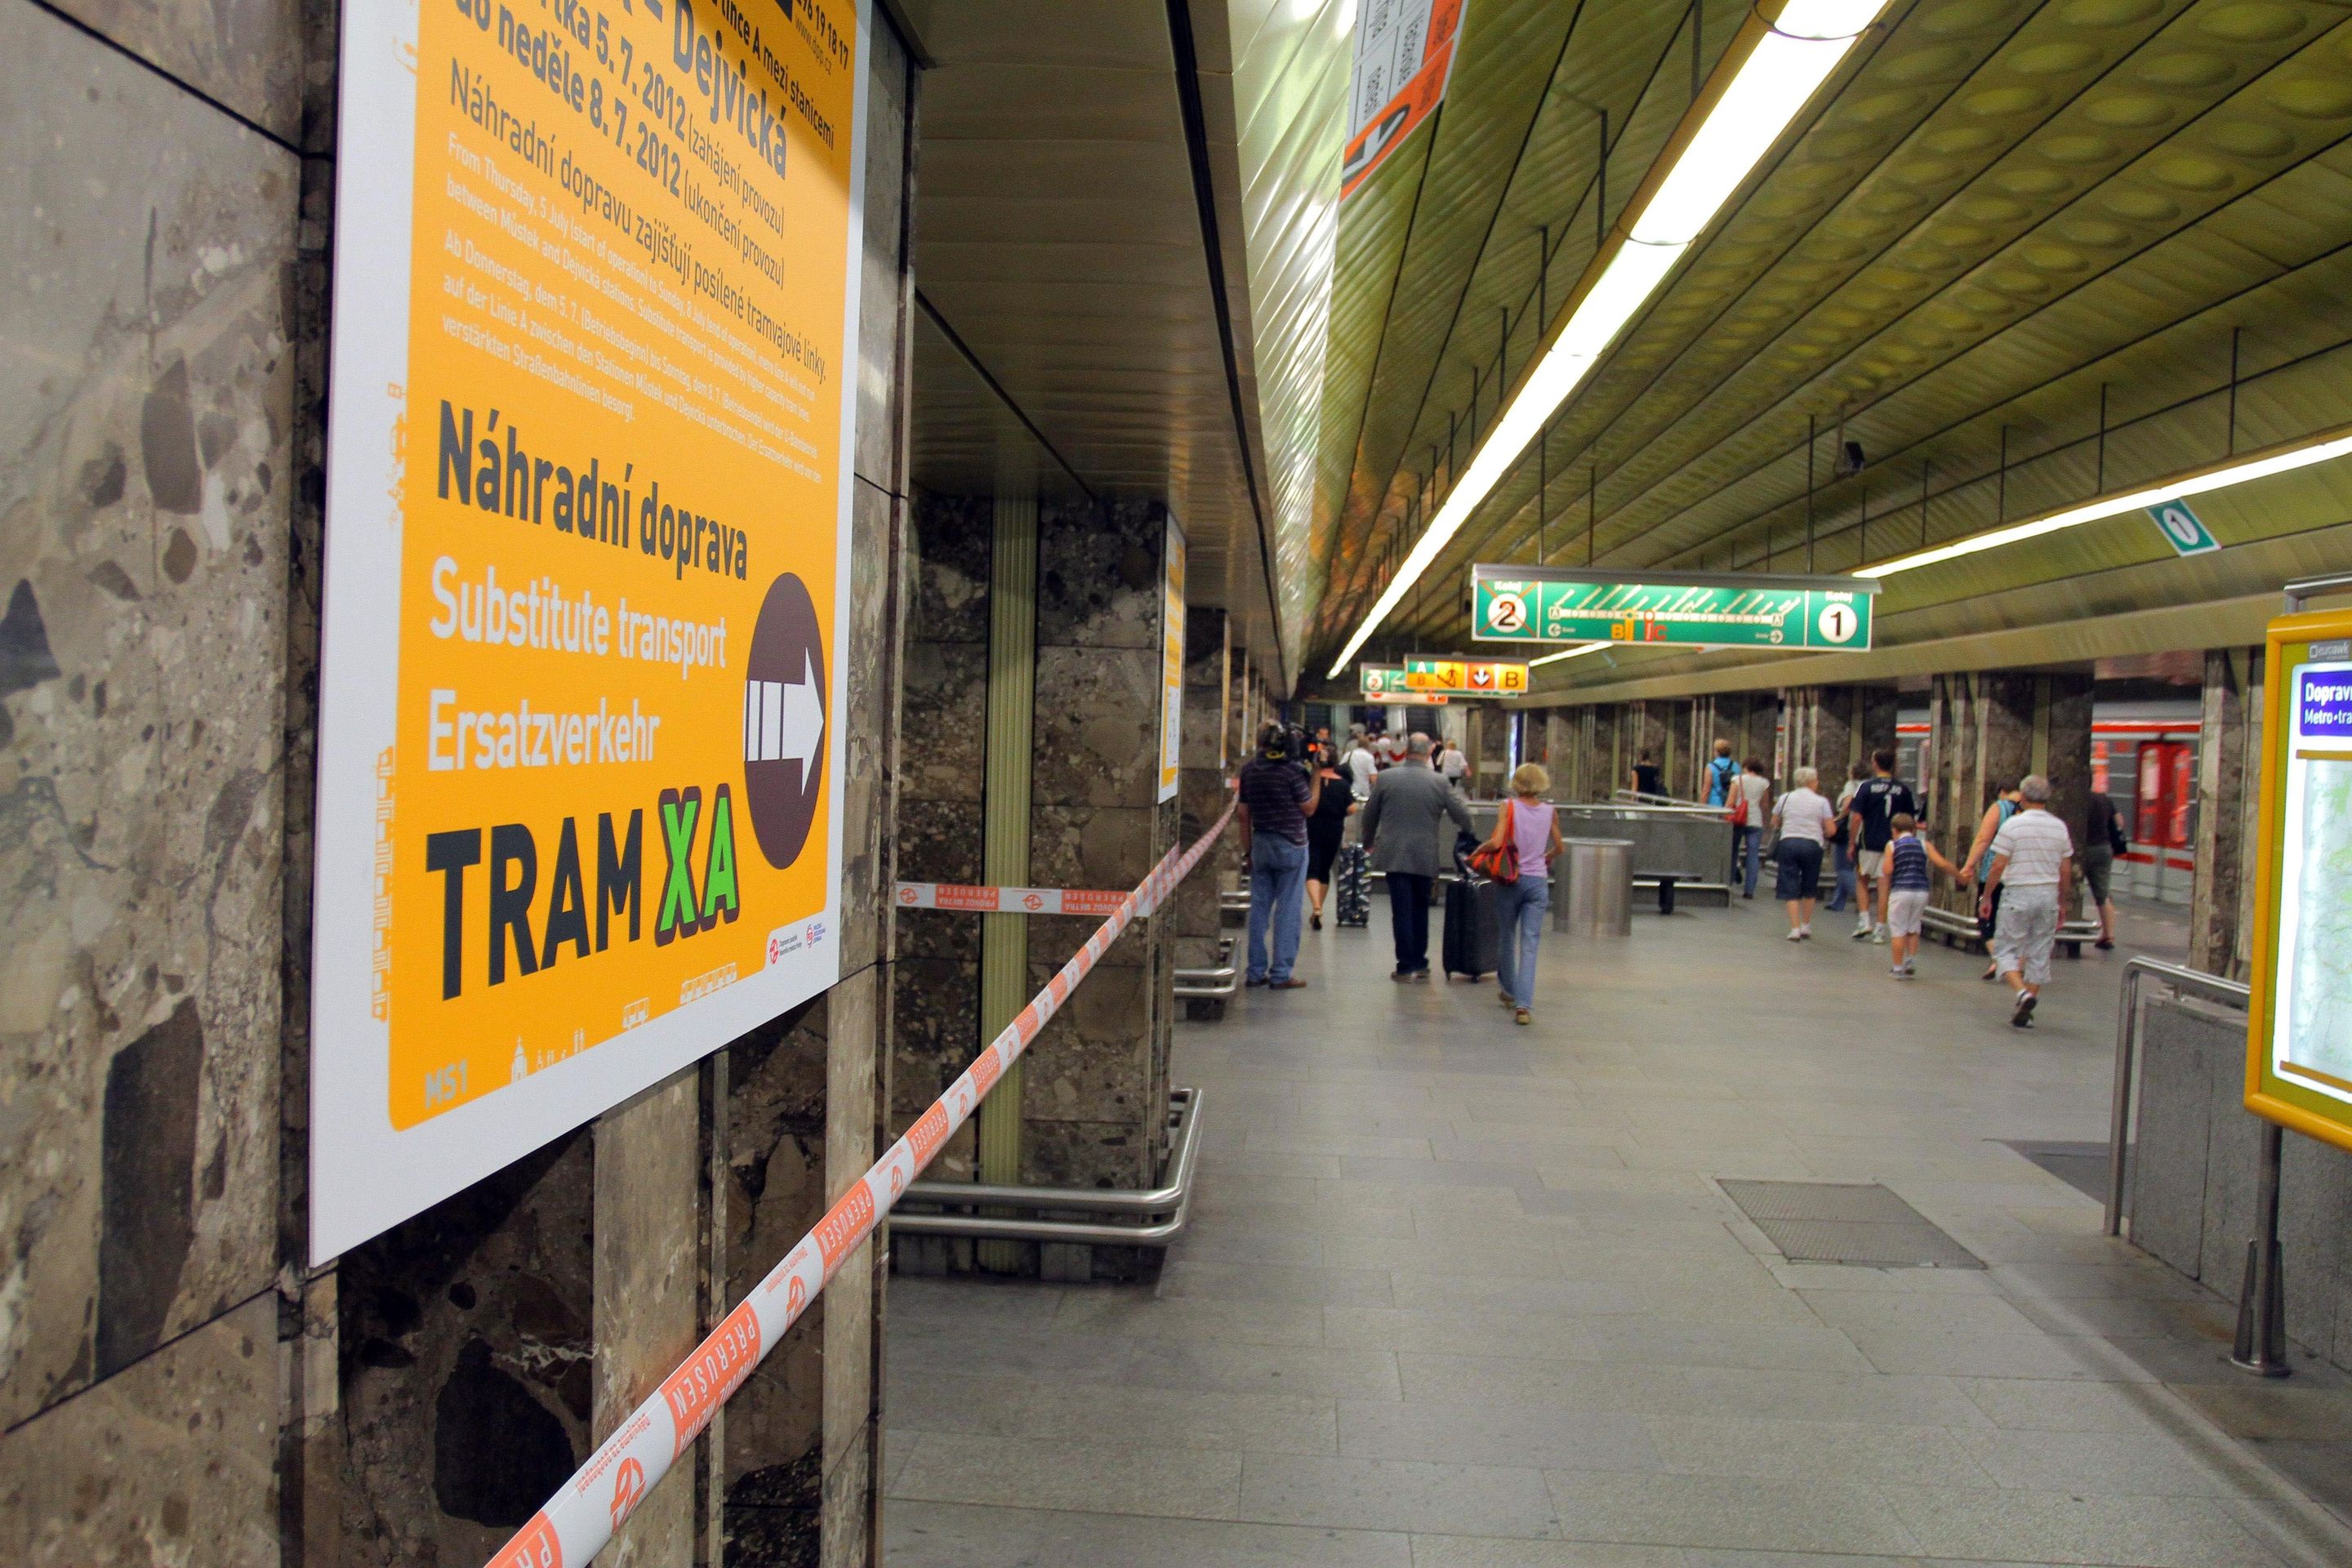 Uzavřená trasa A pražského metra - 4 - Uzavřené metro na lince A (7/10)